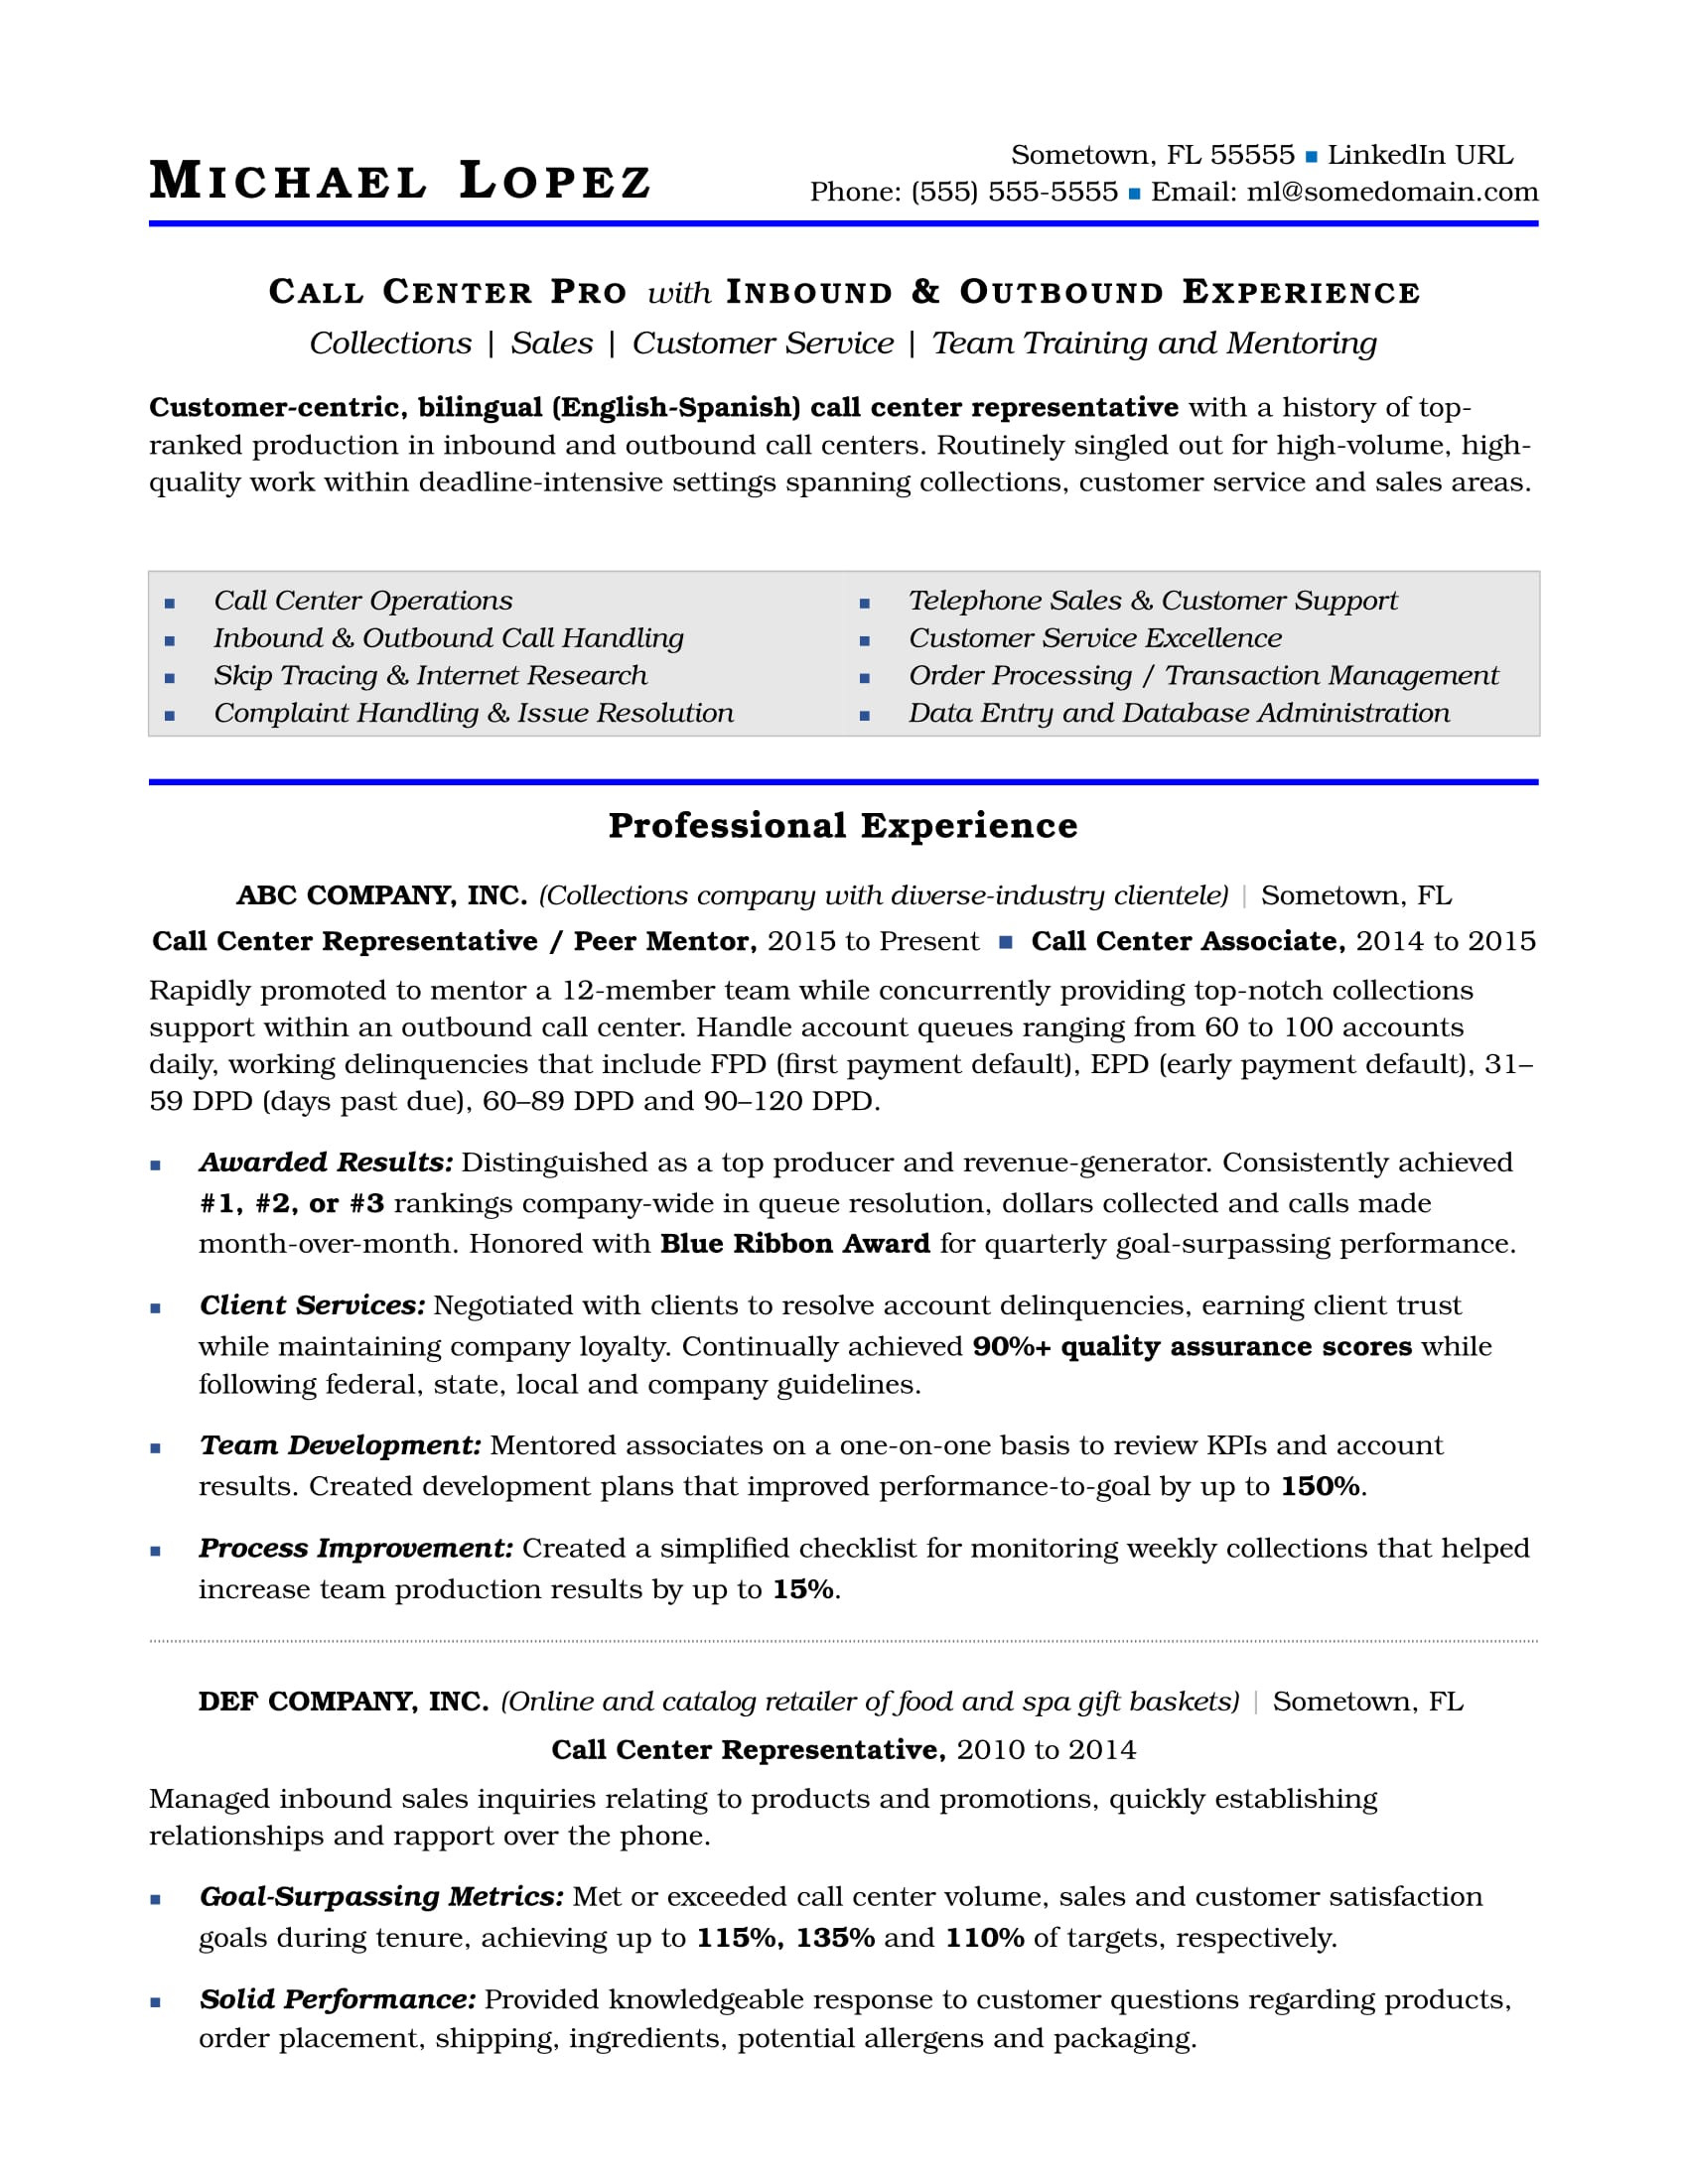 Sample Resume Call Center No Experience Call Center Resume Sample Monster.com